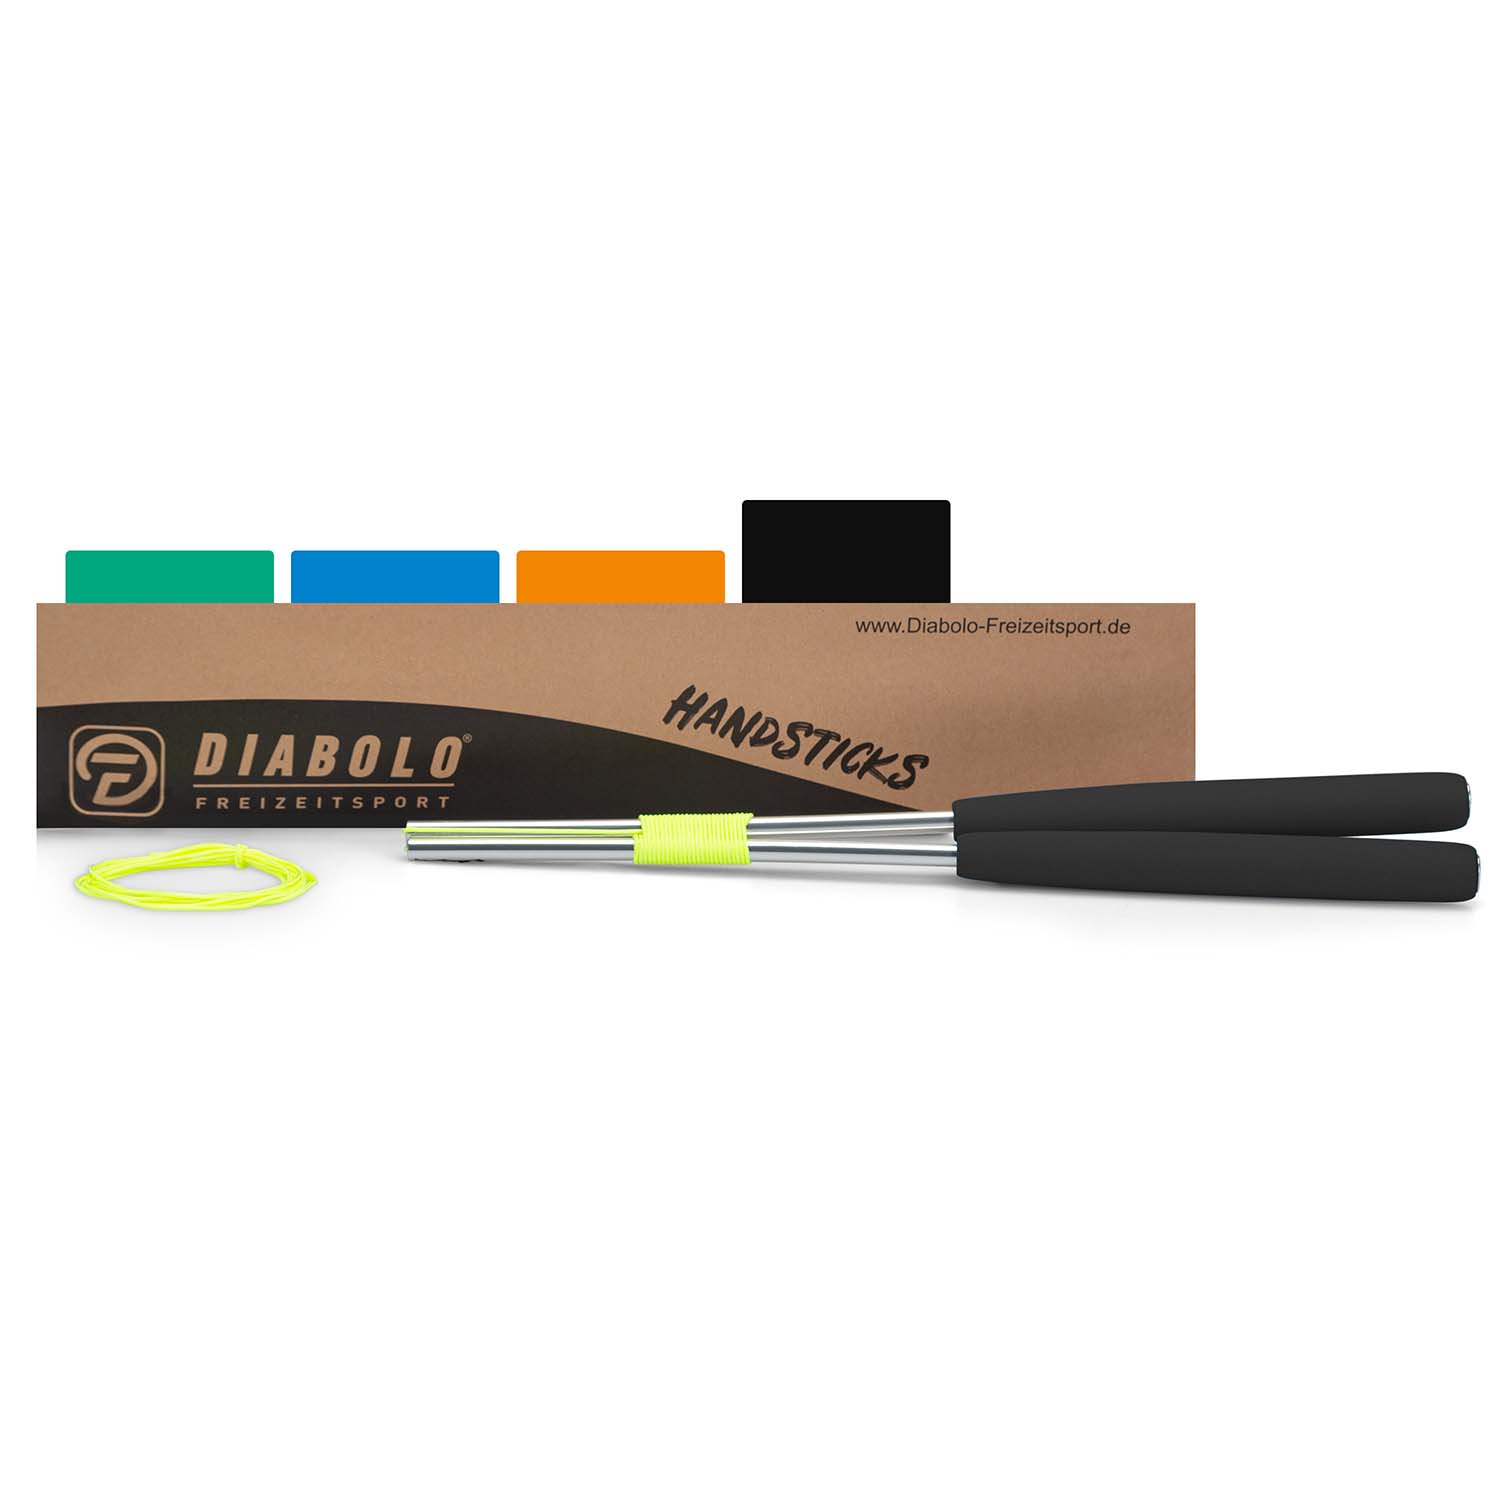 Diabolo Freizeitsport Diabolo Handsticks in schwarz kaufen!